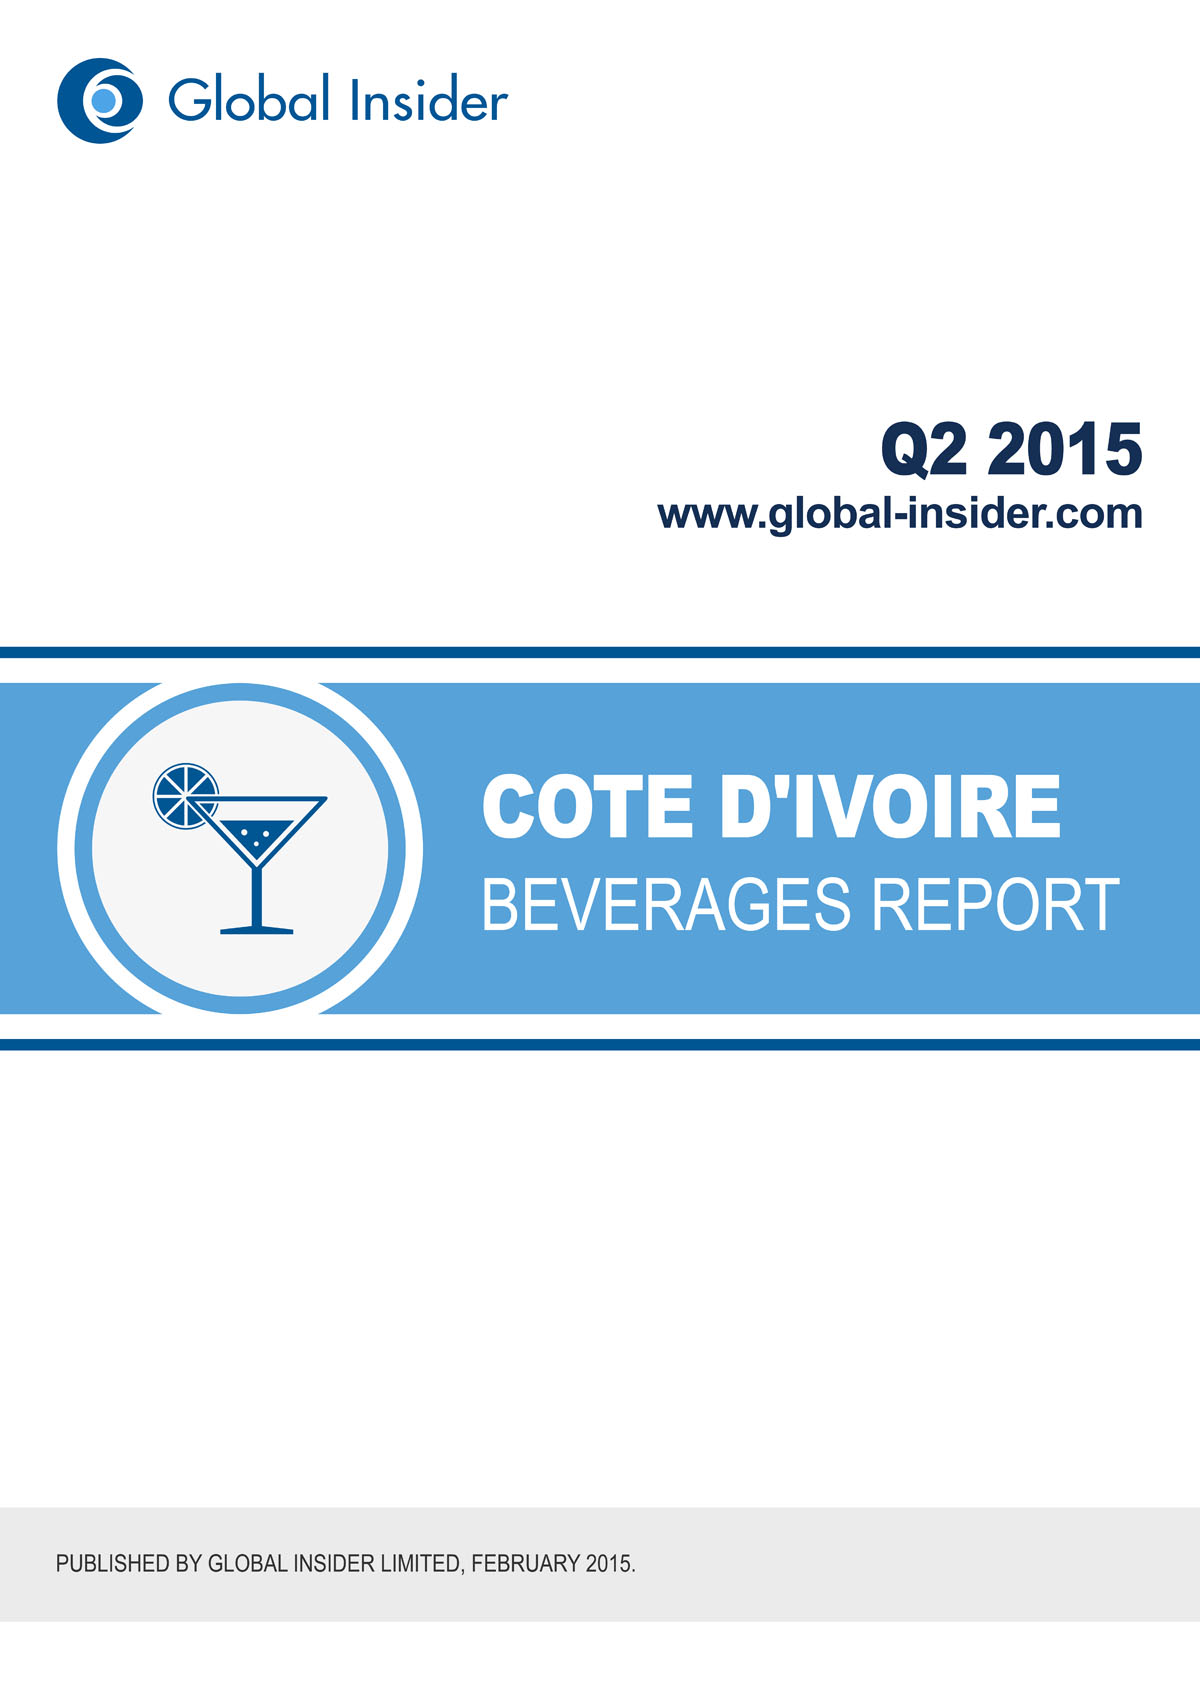 Cote d'Ivoire Beverages Report